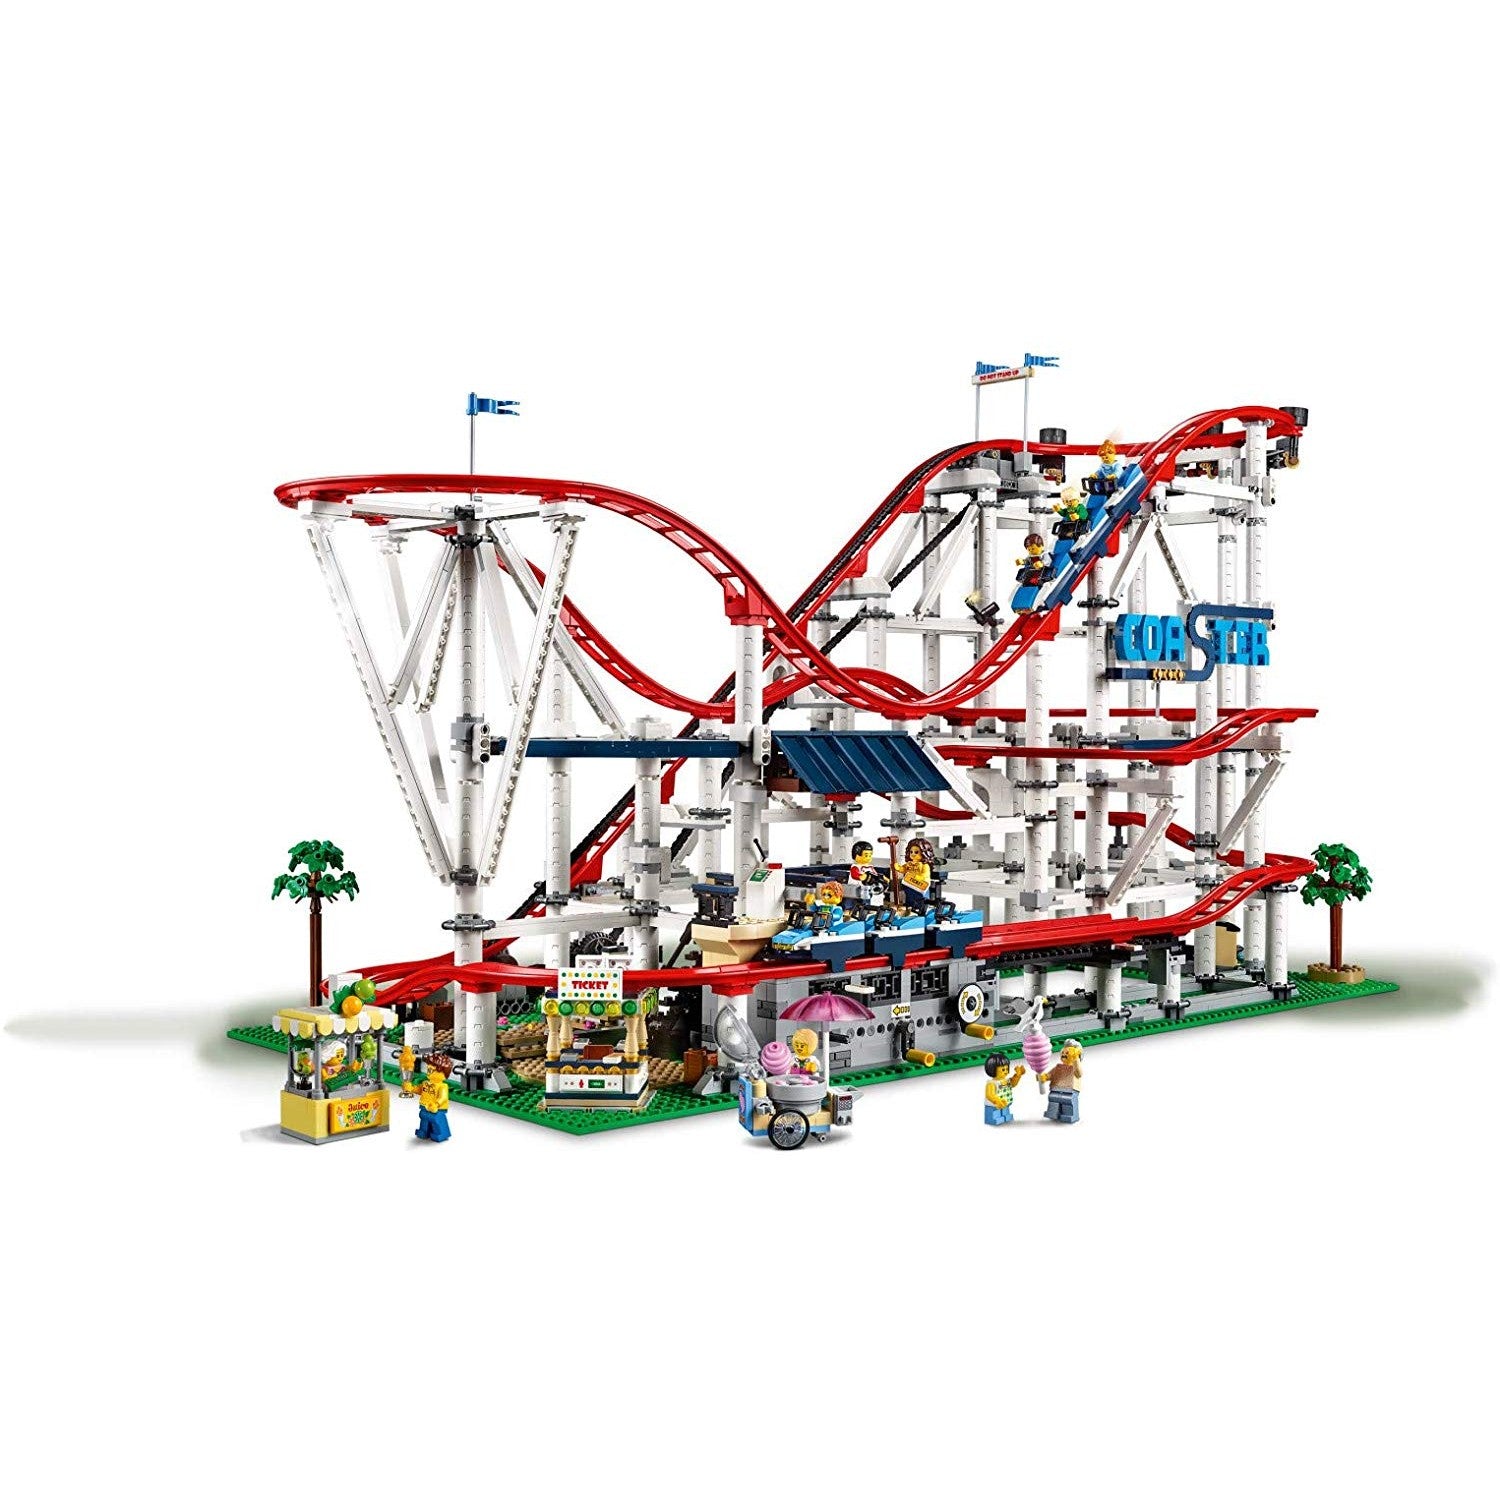 Lego Roller Coaster –